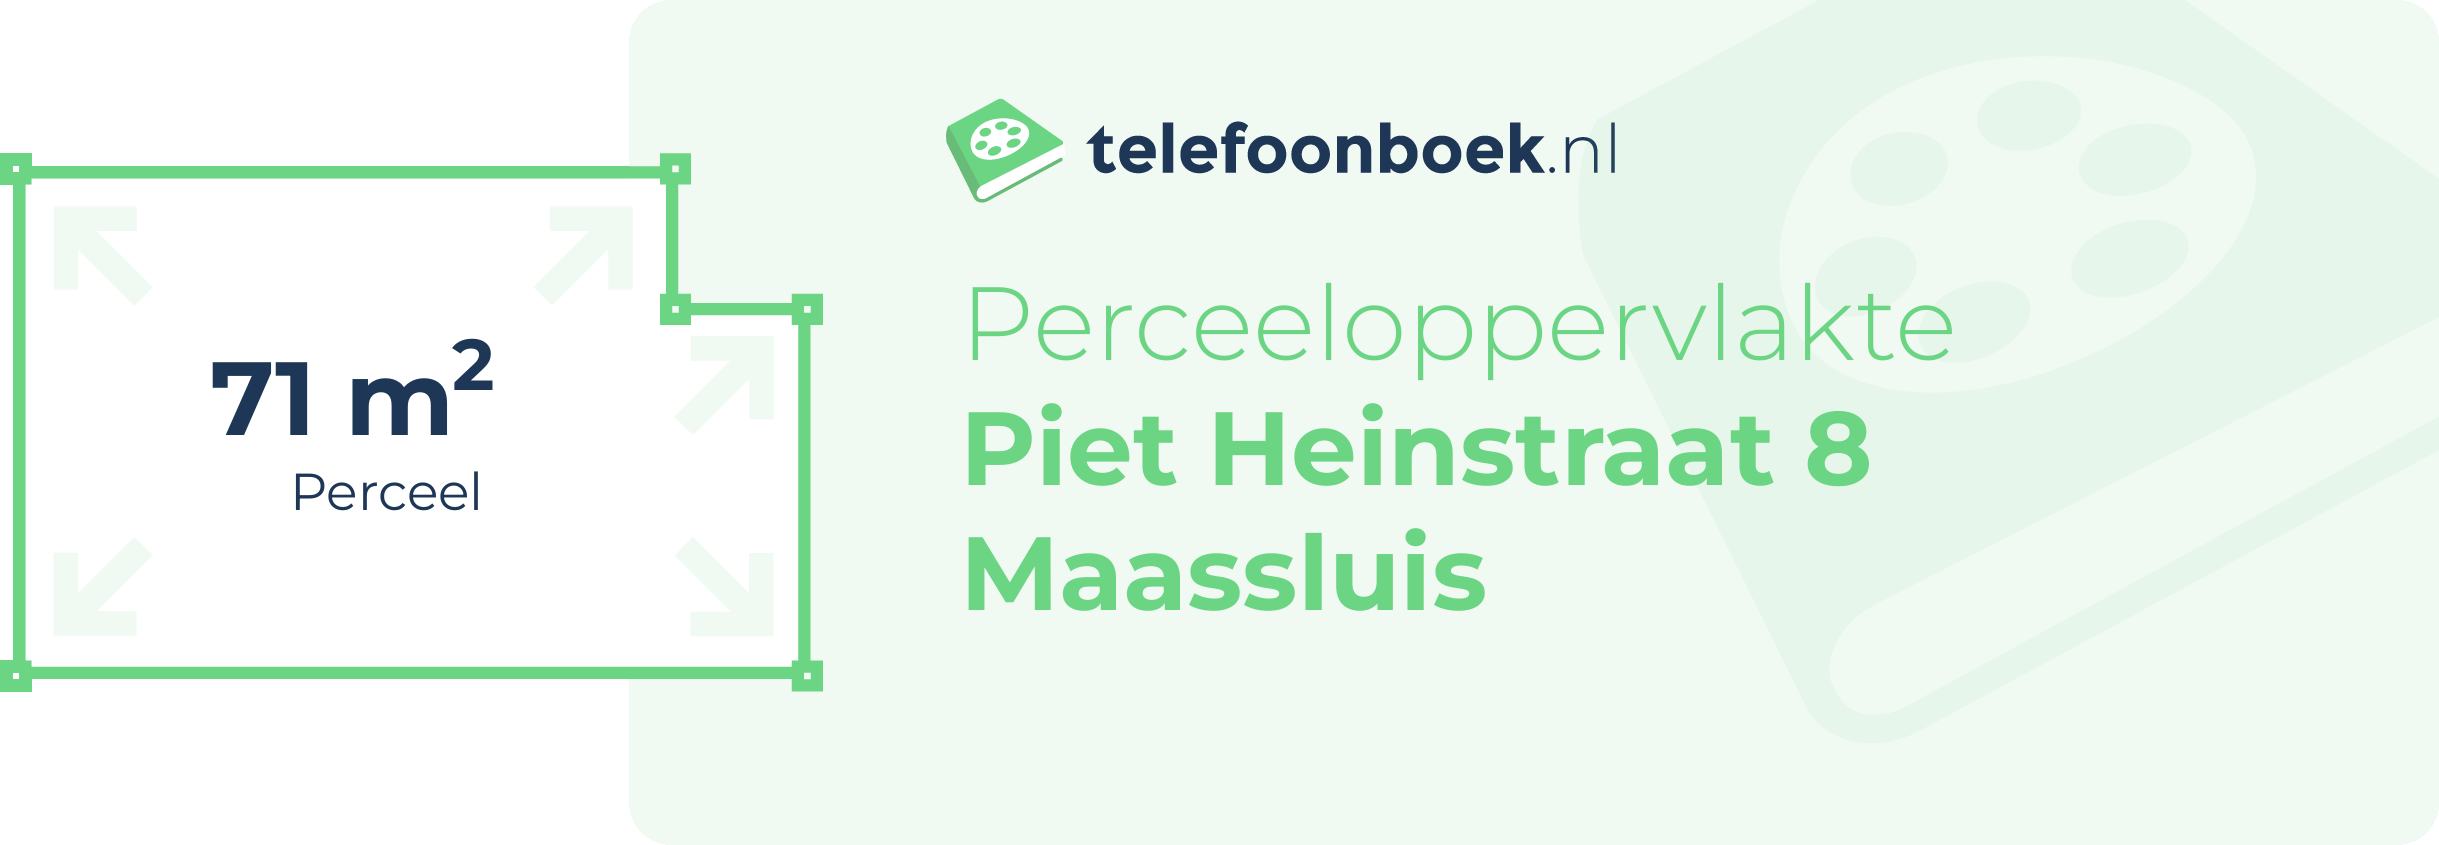 Perceeloppervlakte Piet Heinstraat 8 Maassluis